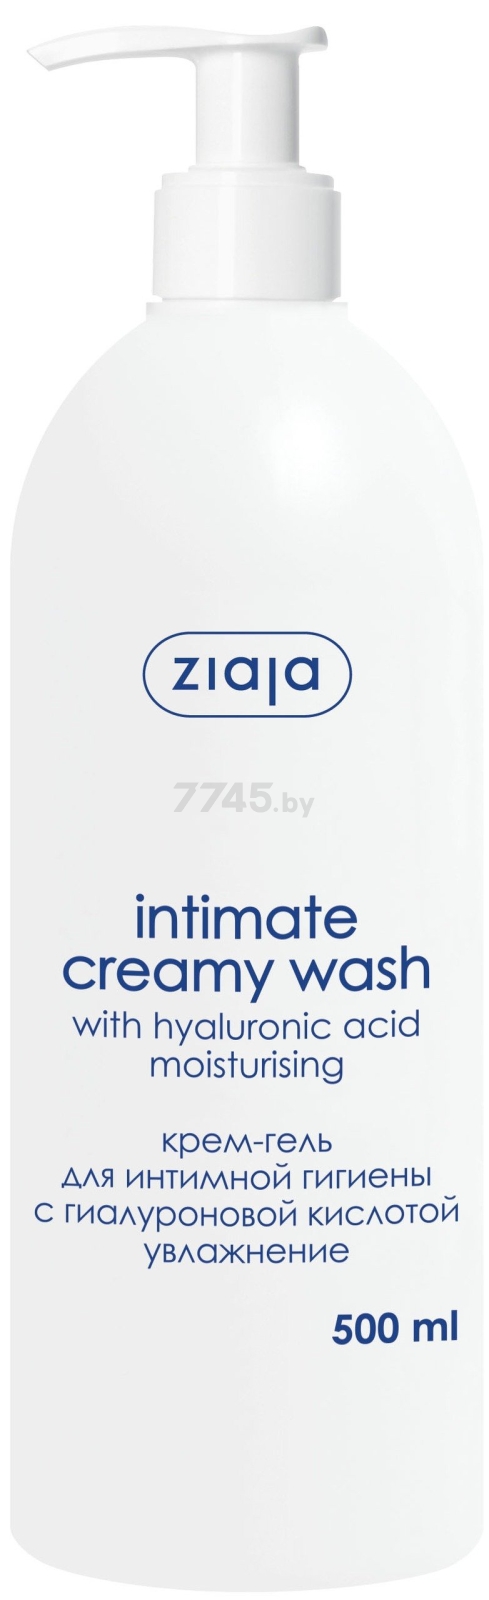 Крем-гель для интимной гигиены ZIAJA Intimate С гиалуроновой кислотой 500 мл (15522)